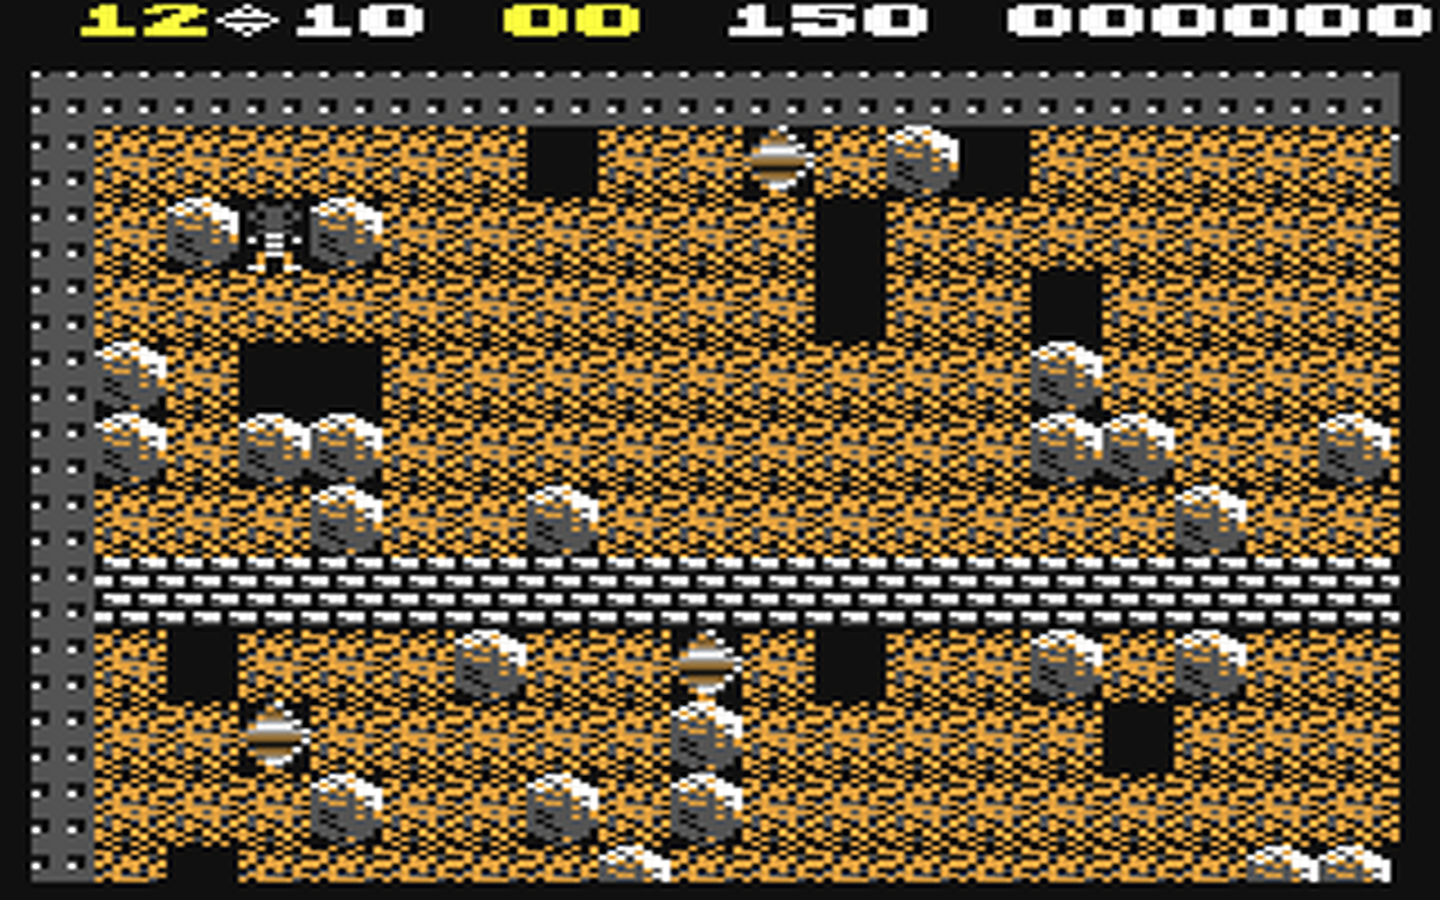 C64 GameBase Boulder_Dash First_Star_Software 1984